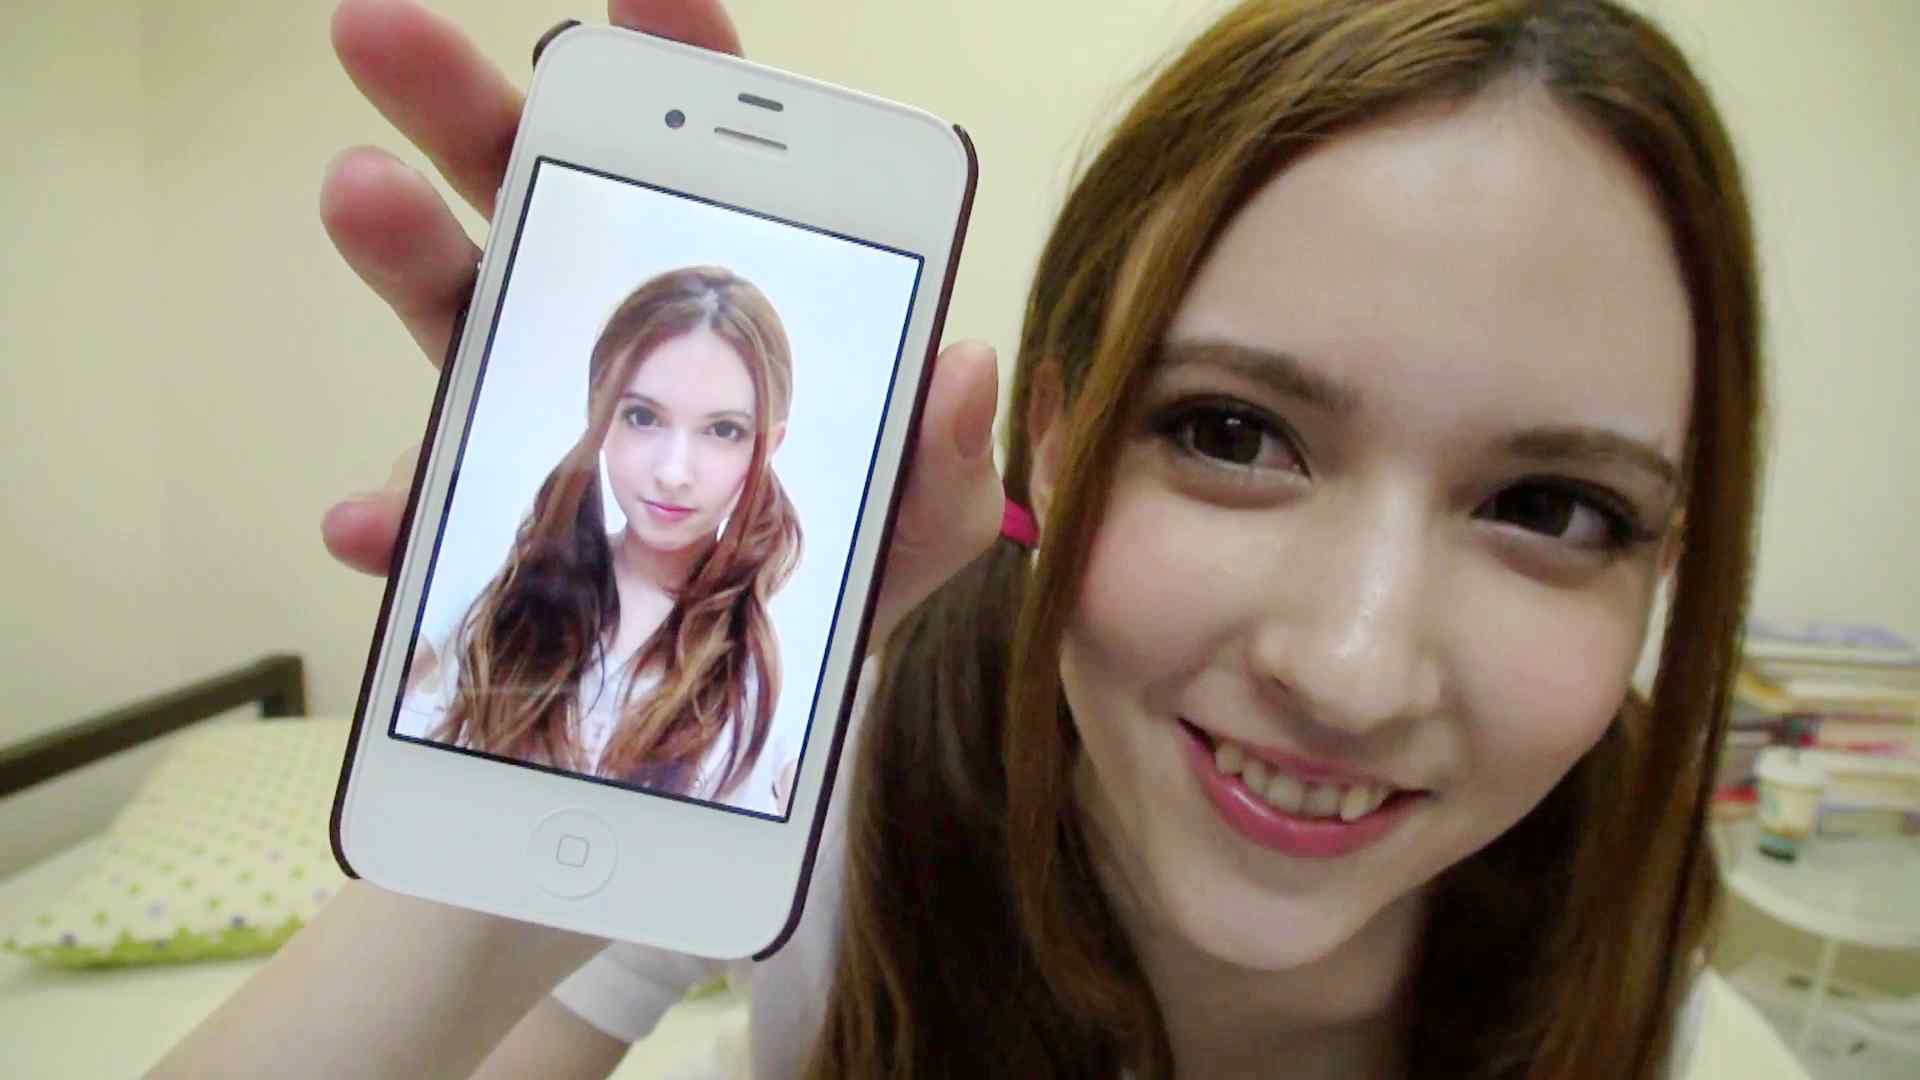 国宝级美女泷泽萝拉因其混血的脸蛋成为日本的网络红人(2) - 名人写真图片 - 名人百科网